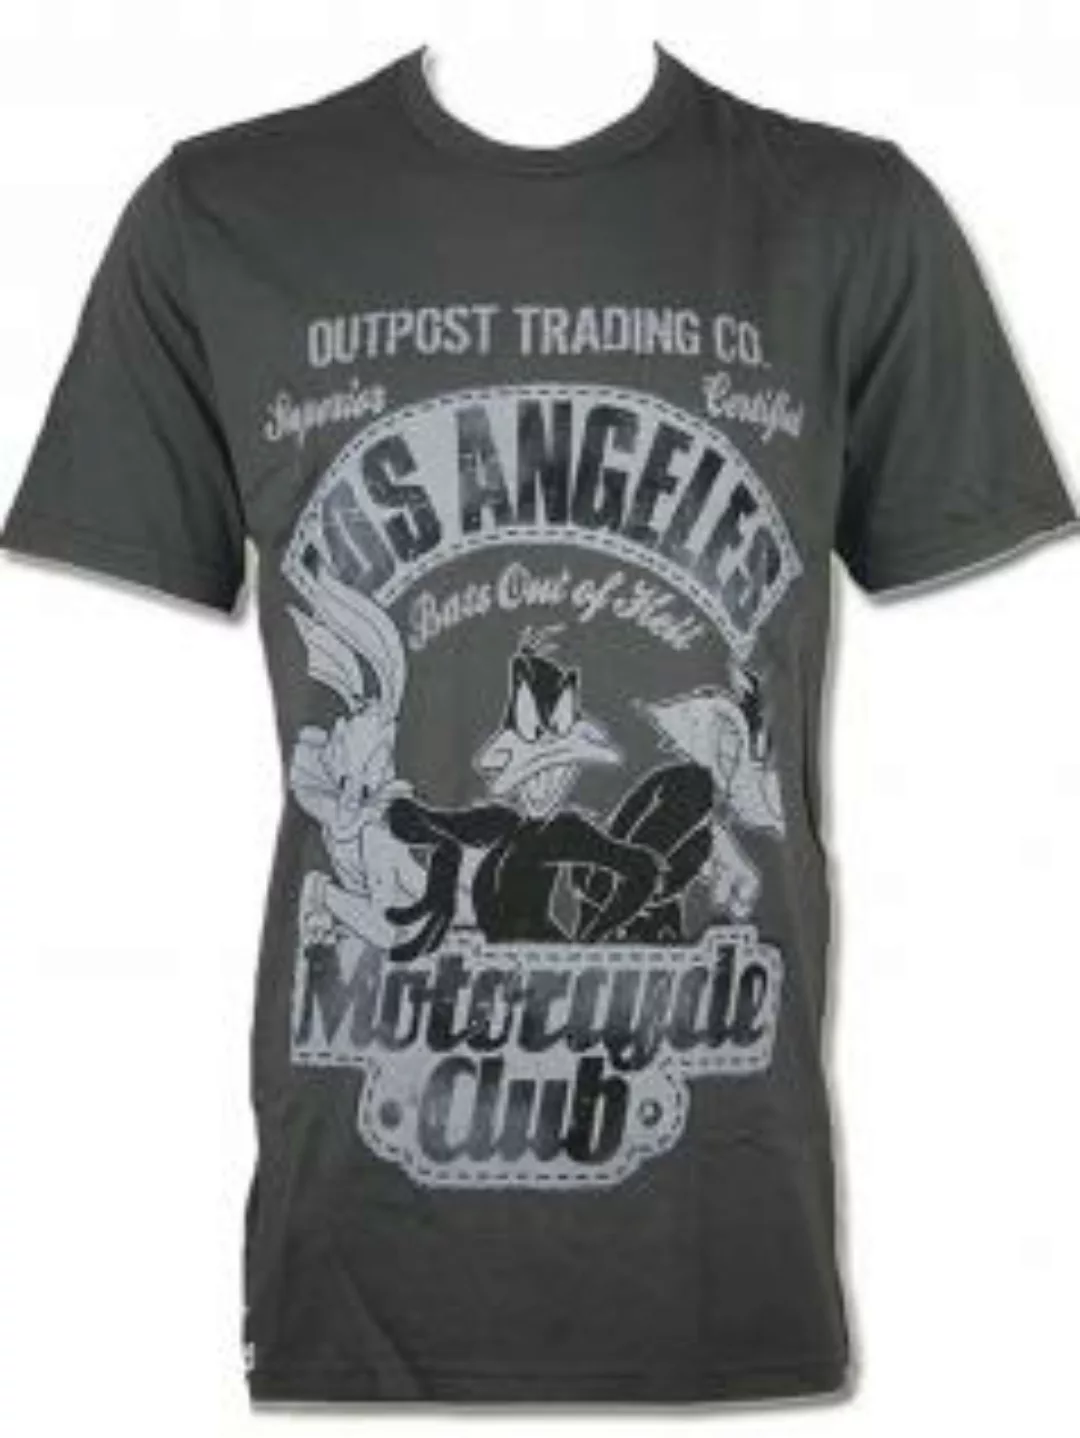 Outpost Herren Shirt Motocycle Club günstig online kaufen